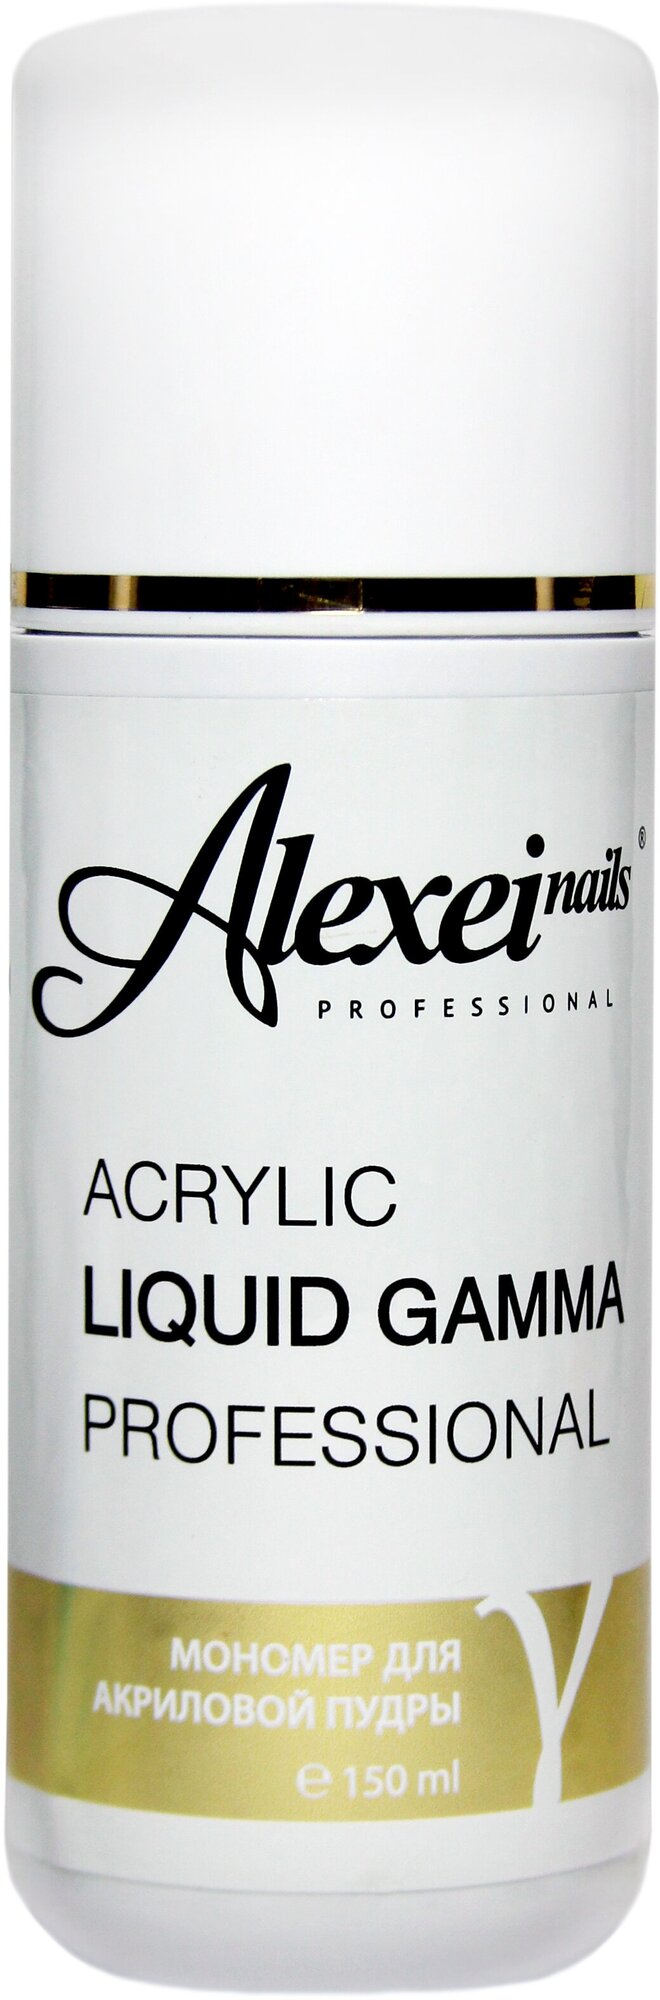 Мономер акриловый для ногтей Acrylic Liqui Gamma AlexeiNails, объем 500 мл, цвет - фиолетовый